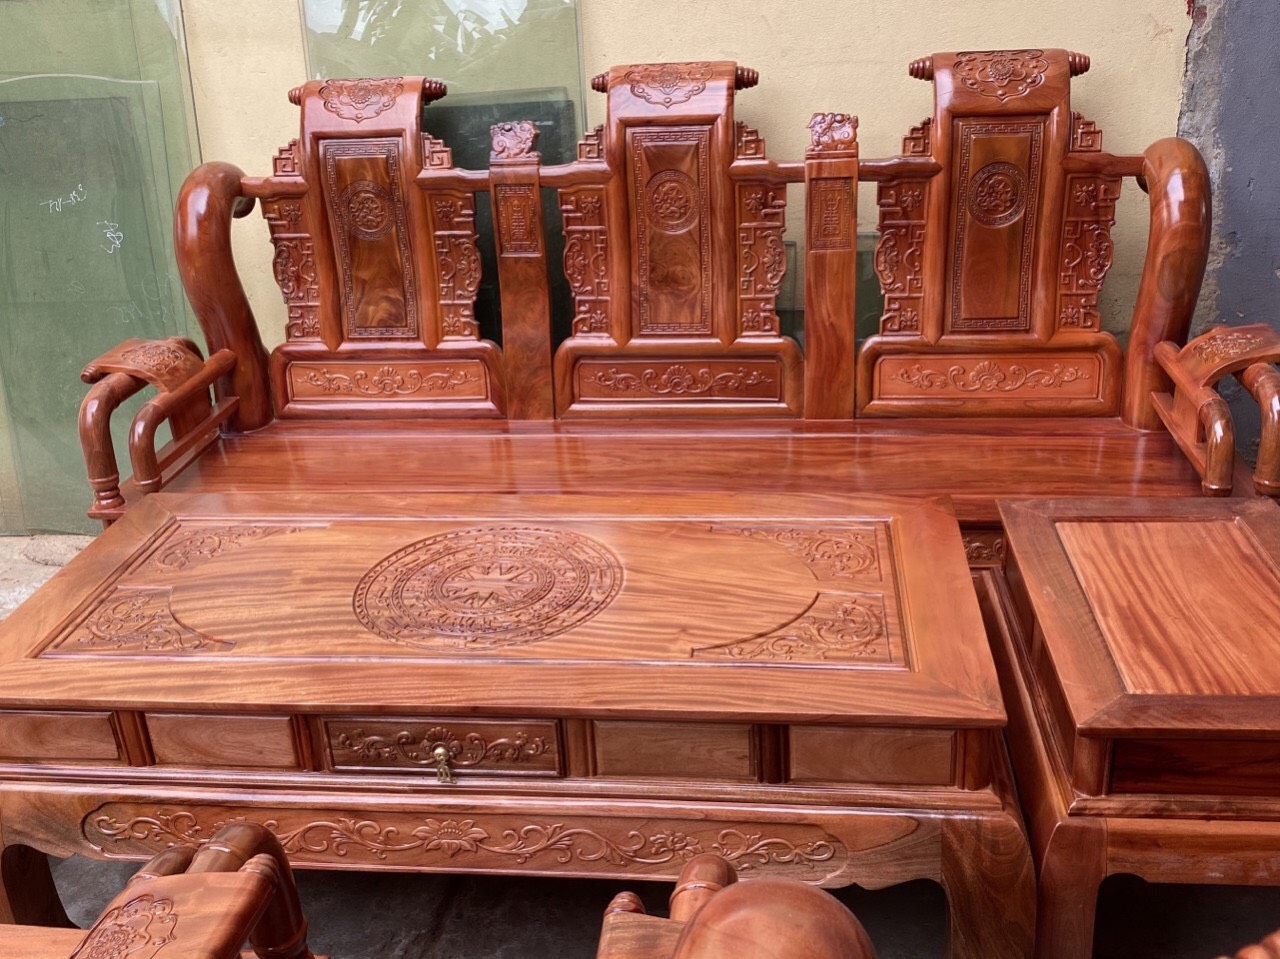 Bộ bàn ghế Tần Thủy Hoàng - một trong những bộ sưu tập nội thất sang trọng và đẳng cấp với kiểu dáng hoàng gia. Lấy cảm hứng từ nội thất cổ điển, bộ bàn ghế Tần Thủy Hoàng sẽ mang đến cho bạn sự trọng lượng trong không gian phòng khách của bạn. Hãy xem những món đồ gỗ này để tận hưởng vẻ đẹp cổ điển nhưng vẫn rất hiện đại.